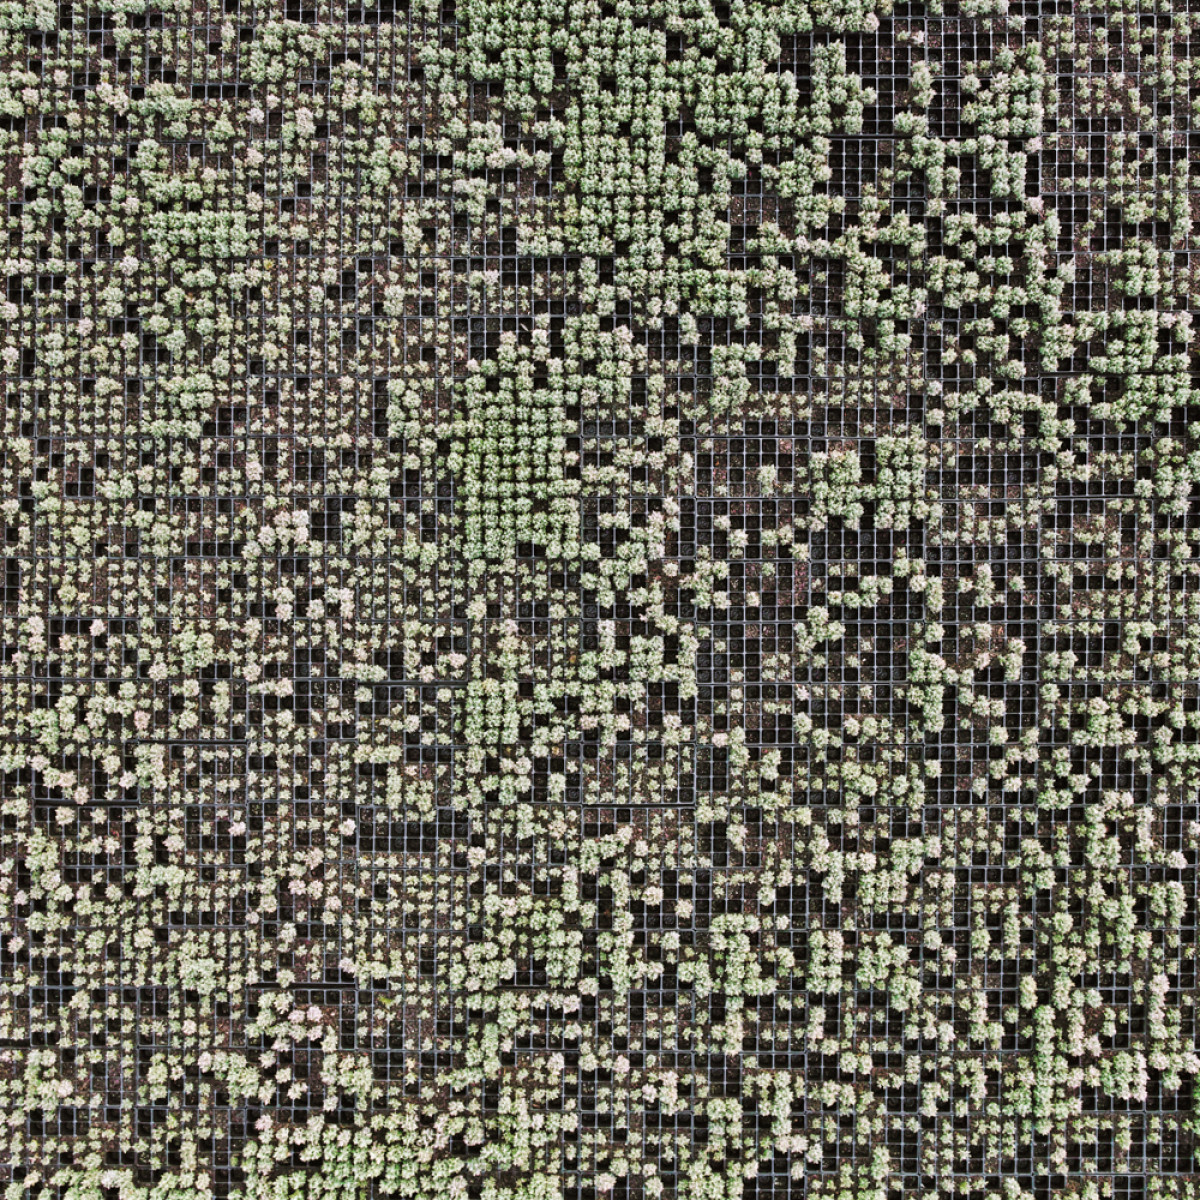 fotografia aerea que parece una alfombra vista al microscopio